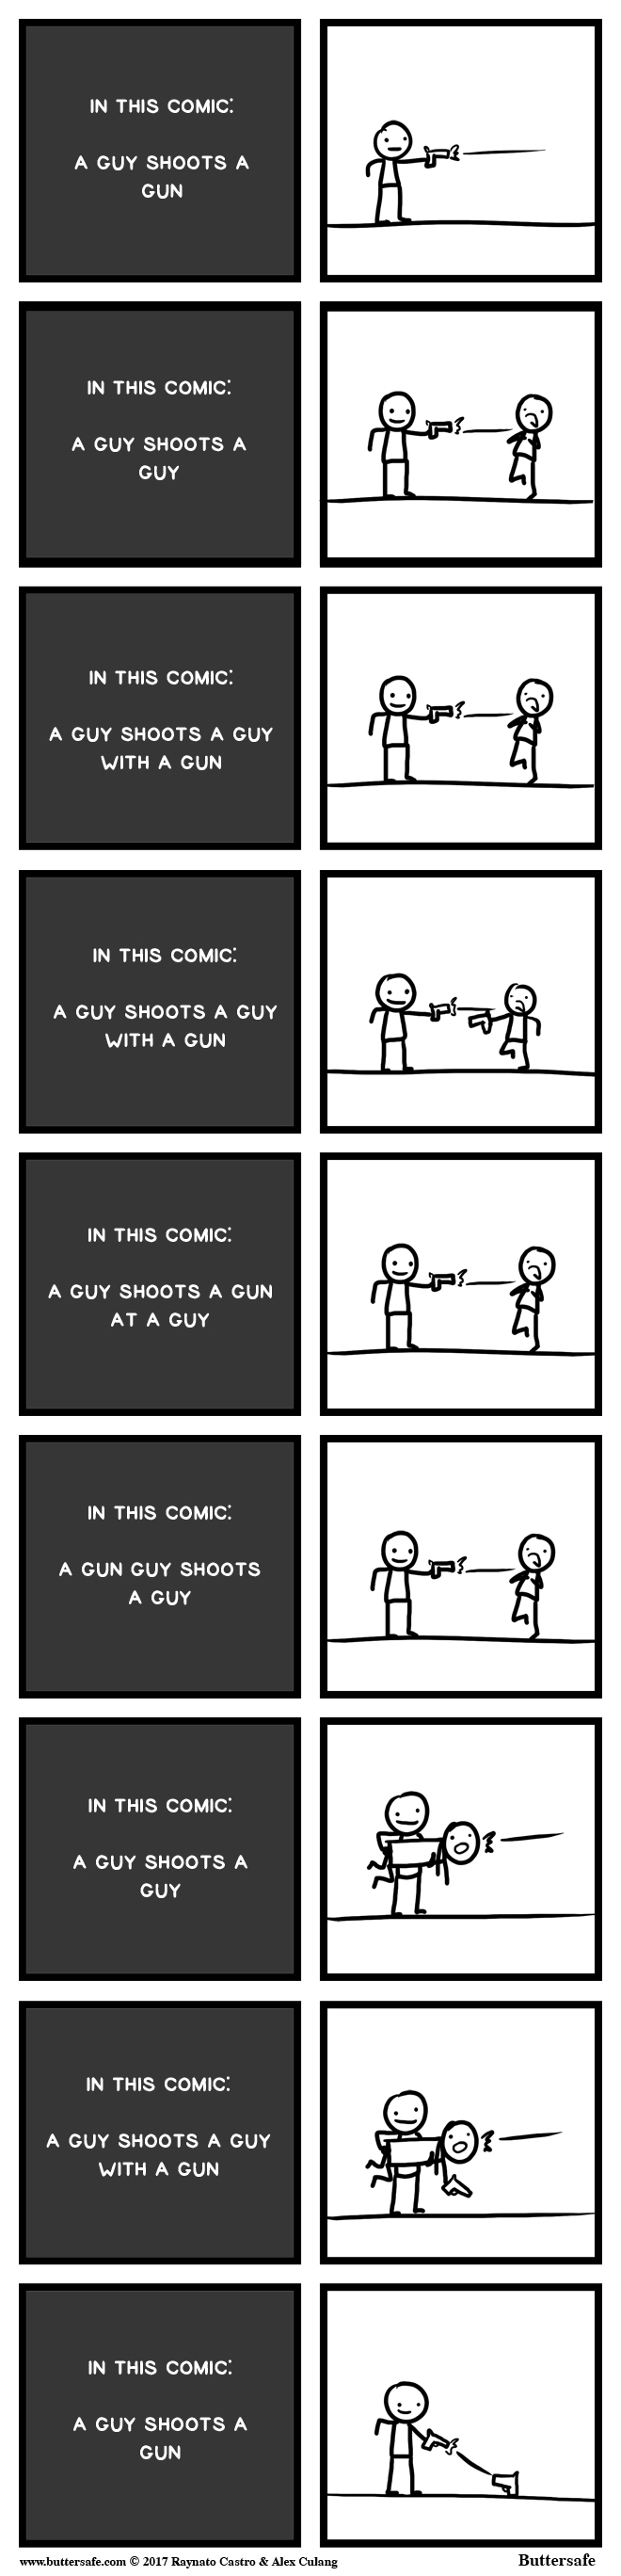 In This Comic: A Guy Shoots a Gun